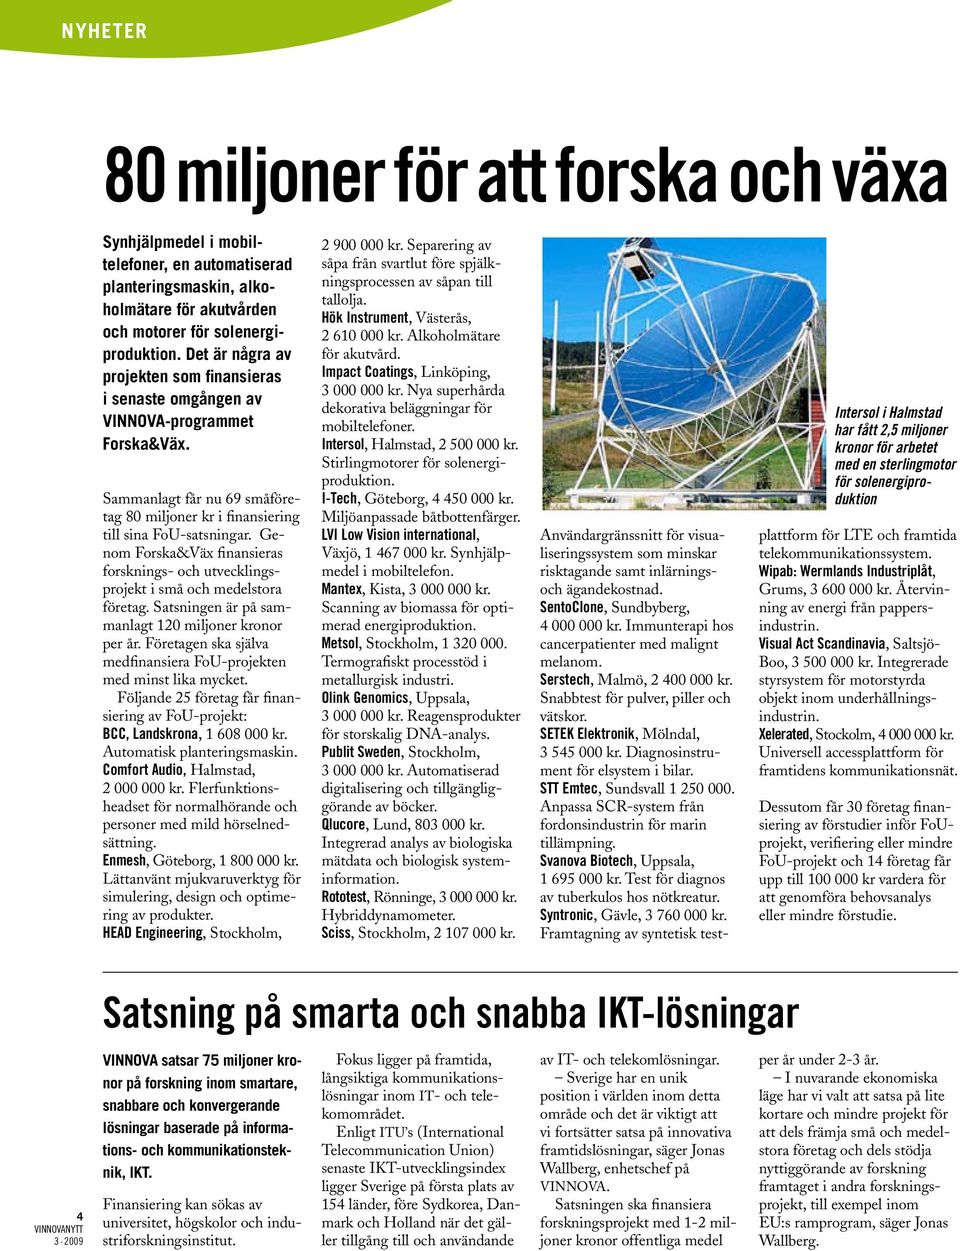 Genom Forska&Väx finansieras forsknings- och utvecklingsprojekt i små och medelstora företag. Satsningen är på sammanlagt 120 miljoner kronor per år.